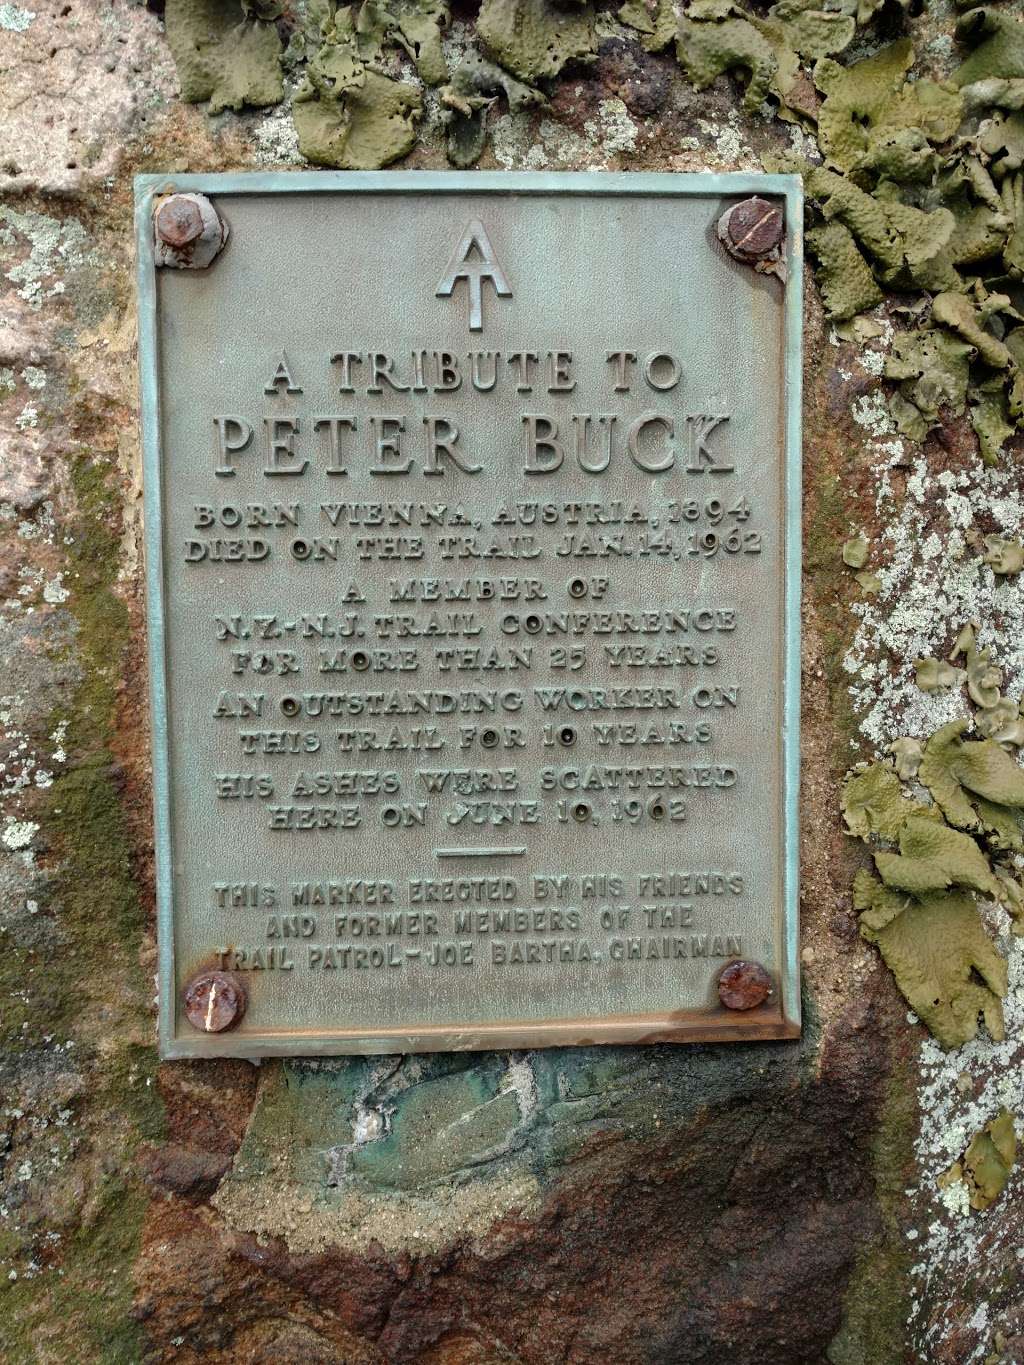 Peter Buck Memorial | Appalachian Trail, Tuxedo Park, NY 10987, USA